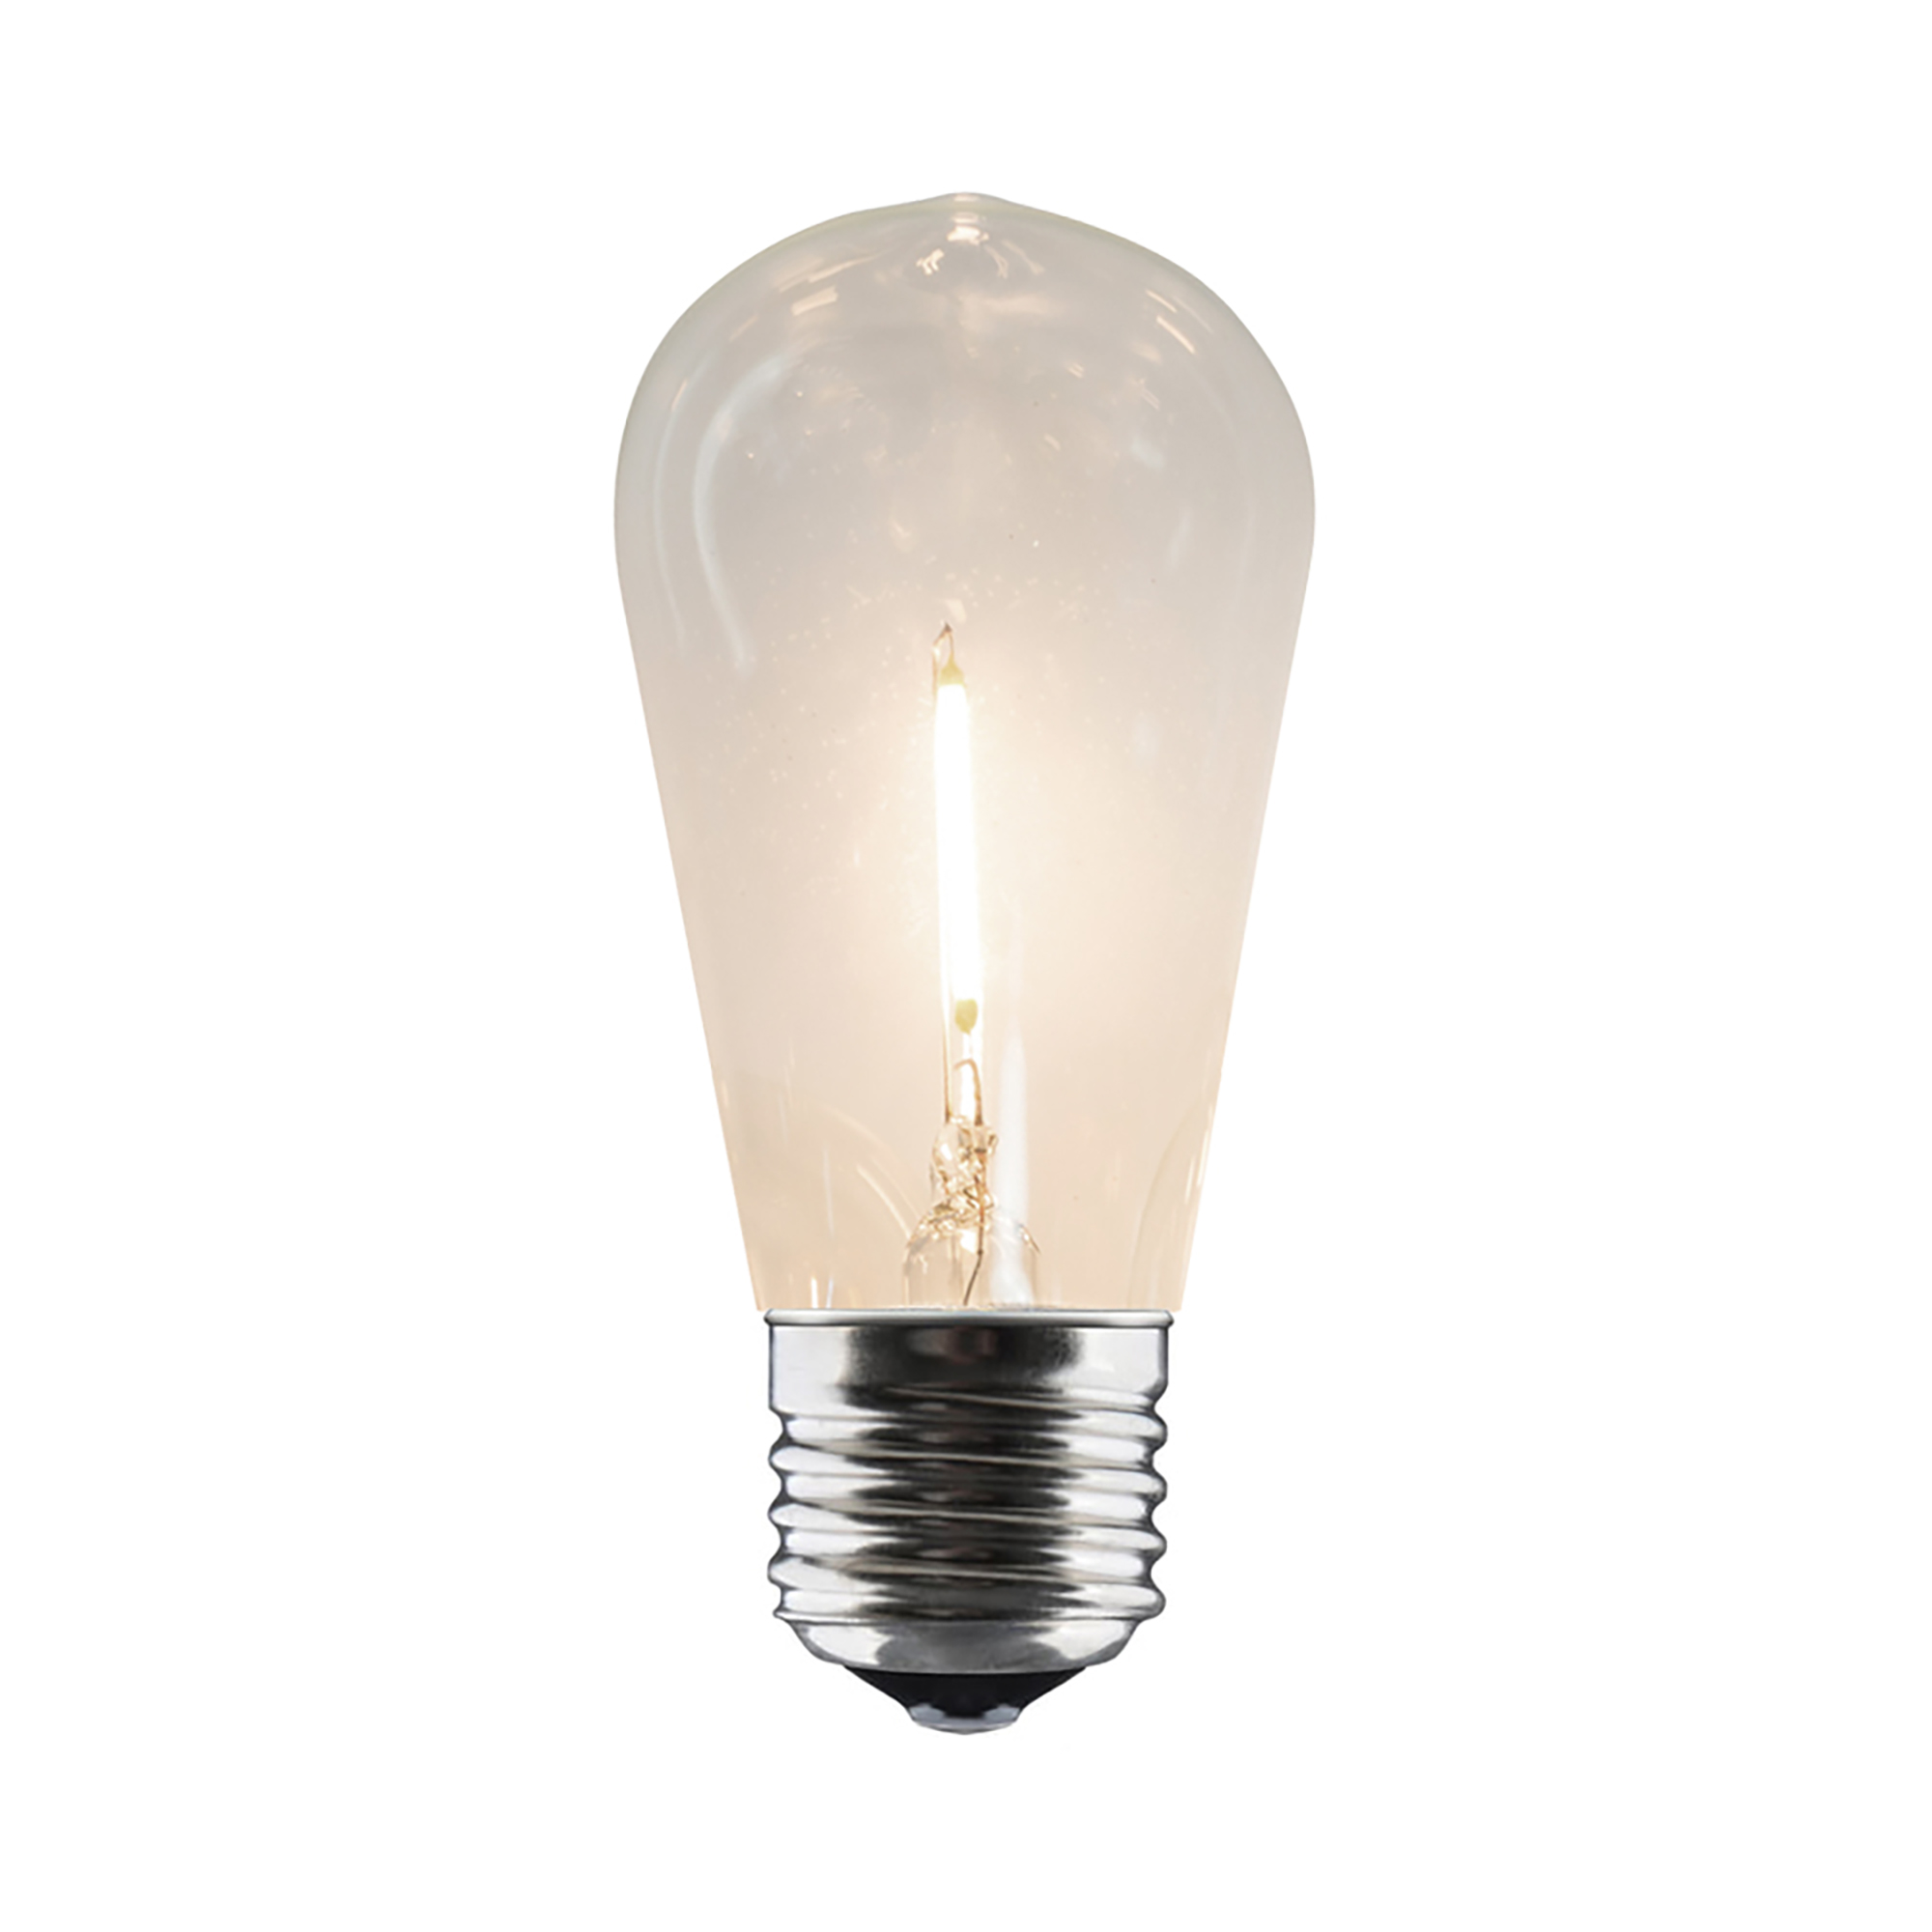 Collection - Ampoule de rechange pour chane lumineuse LED - transparent/ovale/E27/6W/220-240V 50/60Hz/douille avec filetage  gauche